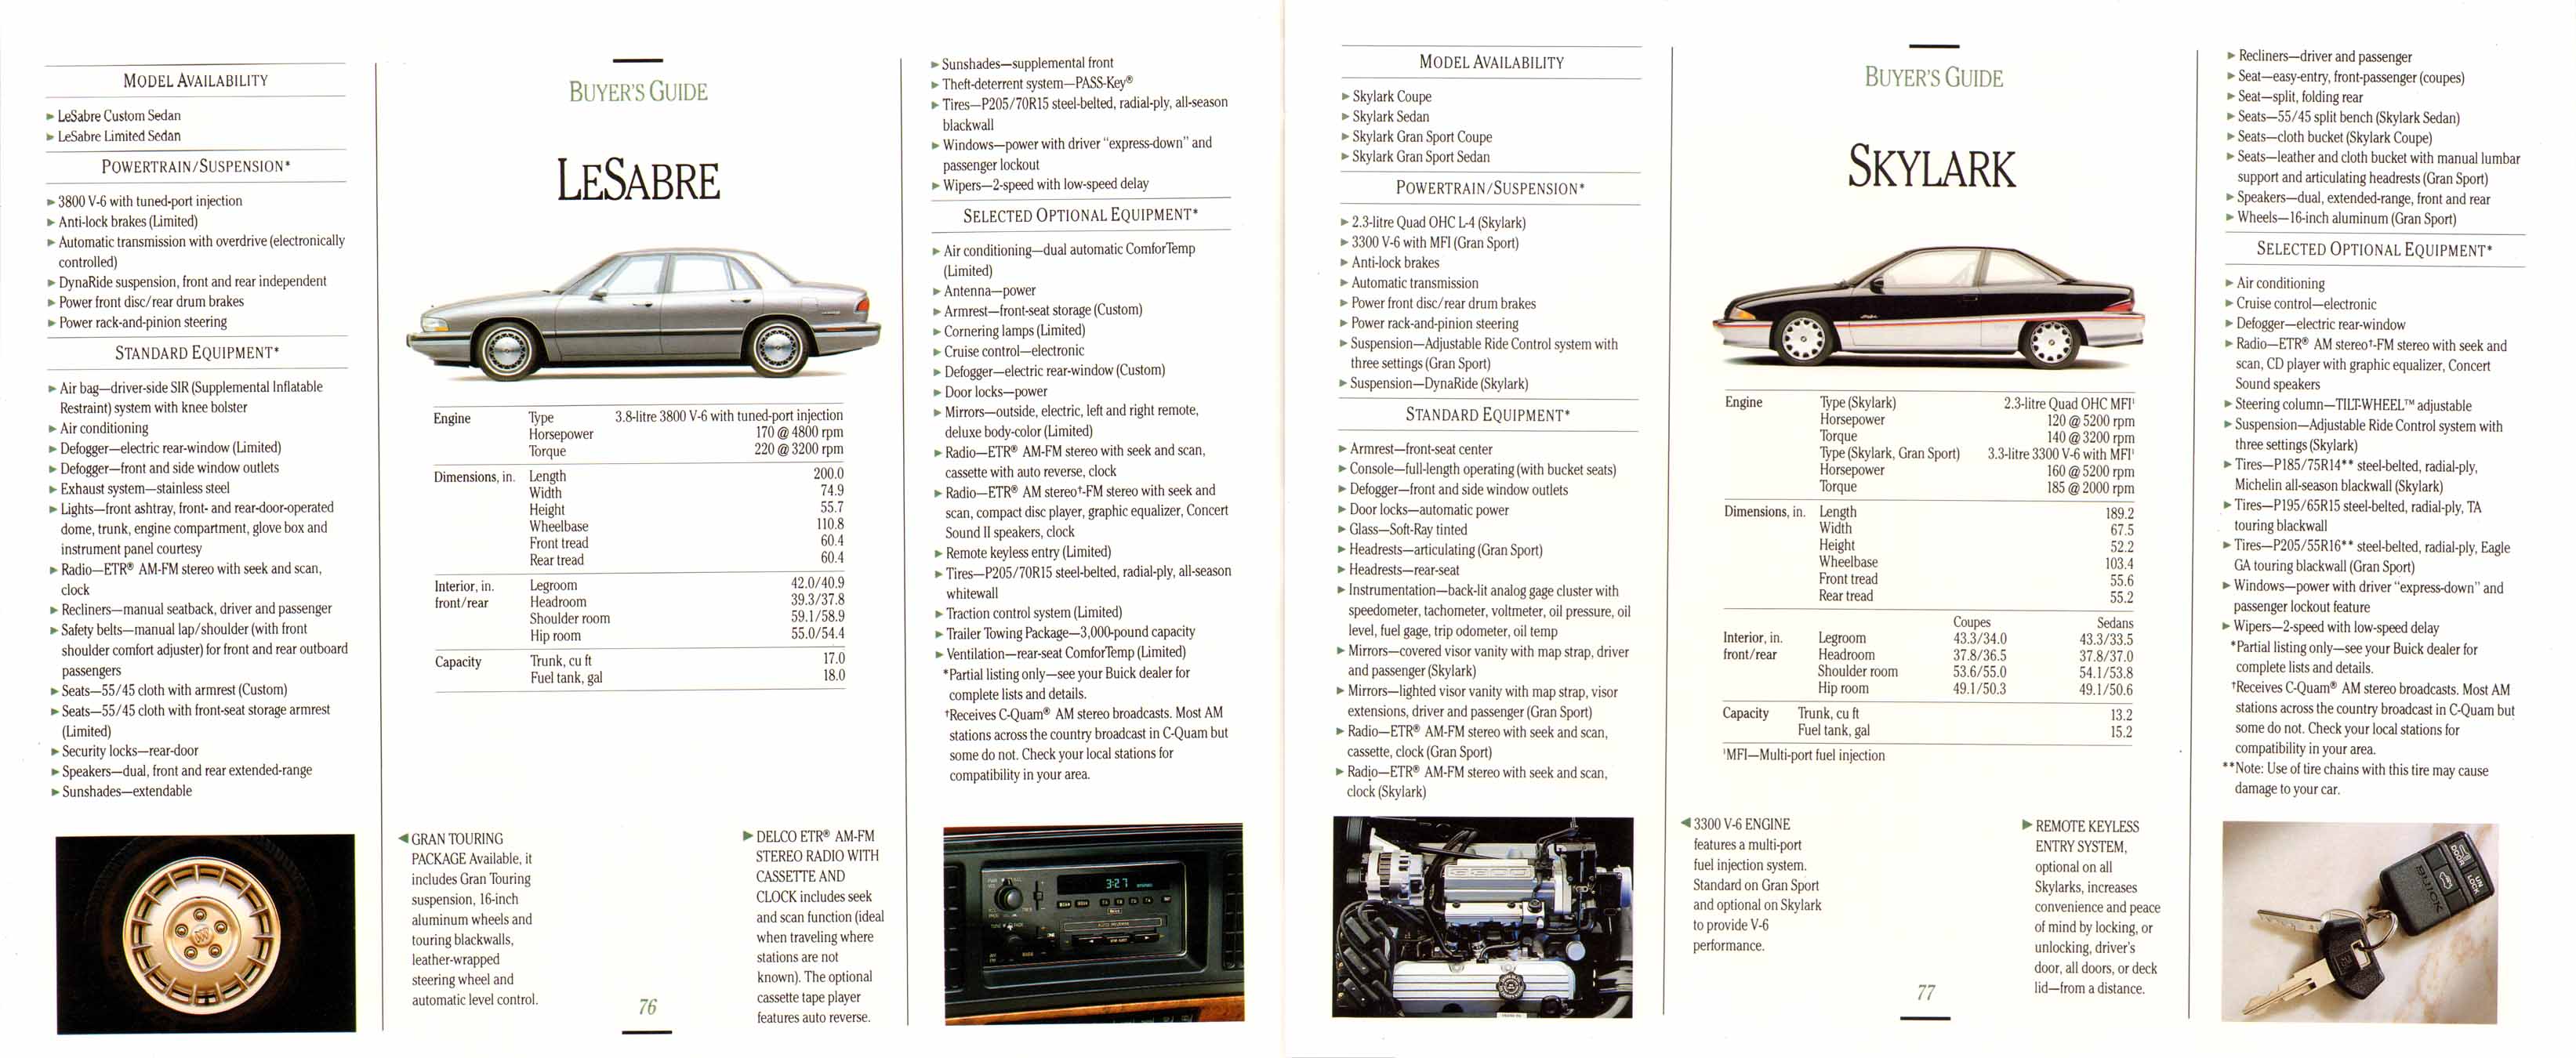 1992 Buick Full Line Prestige-76-77